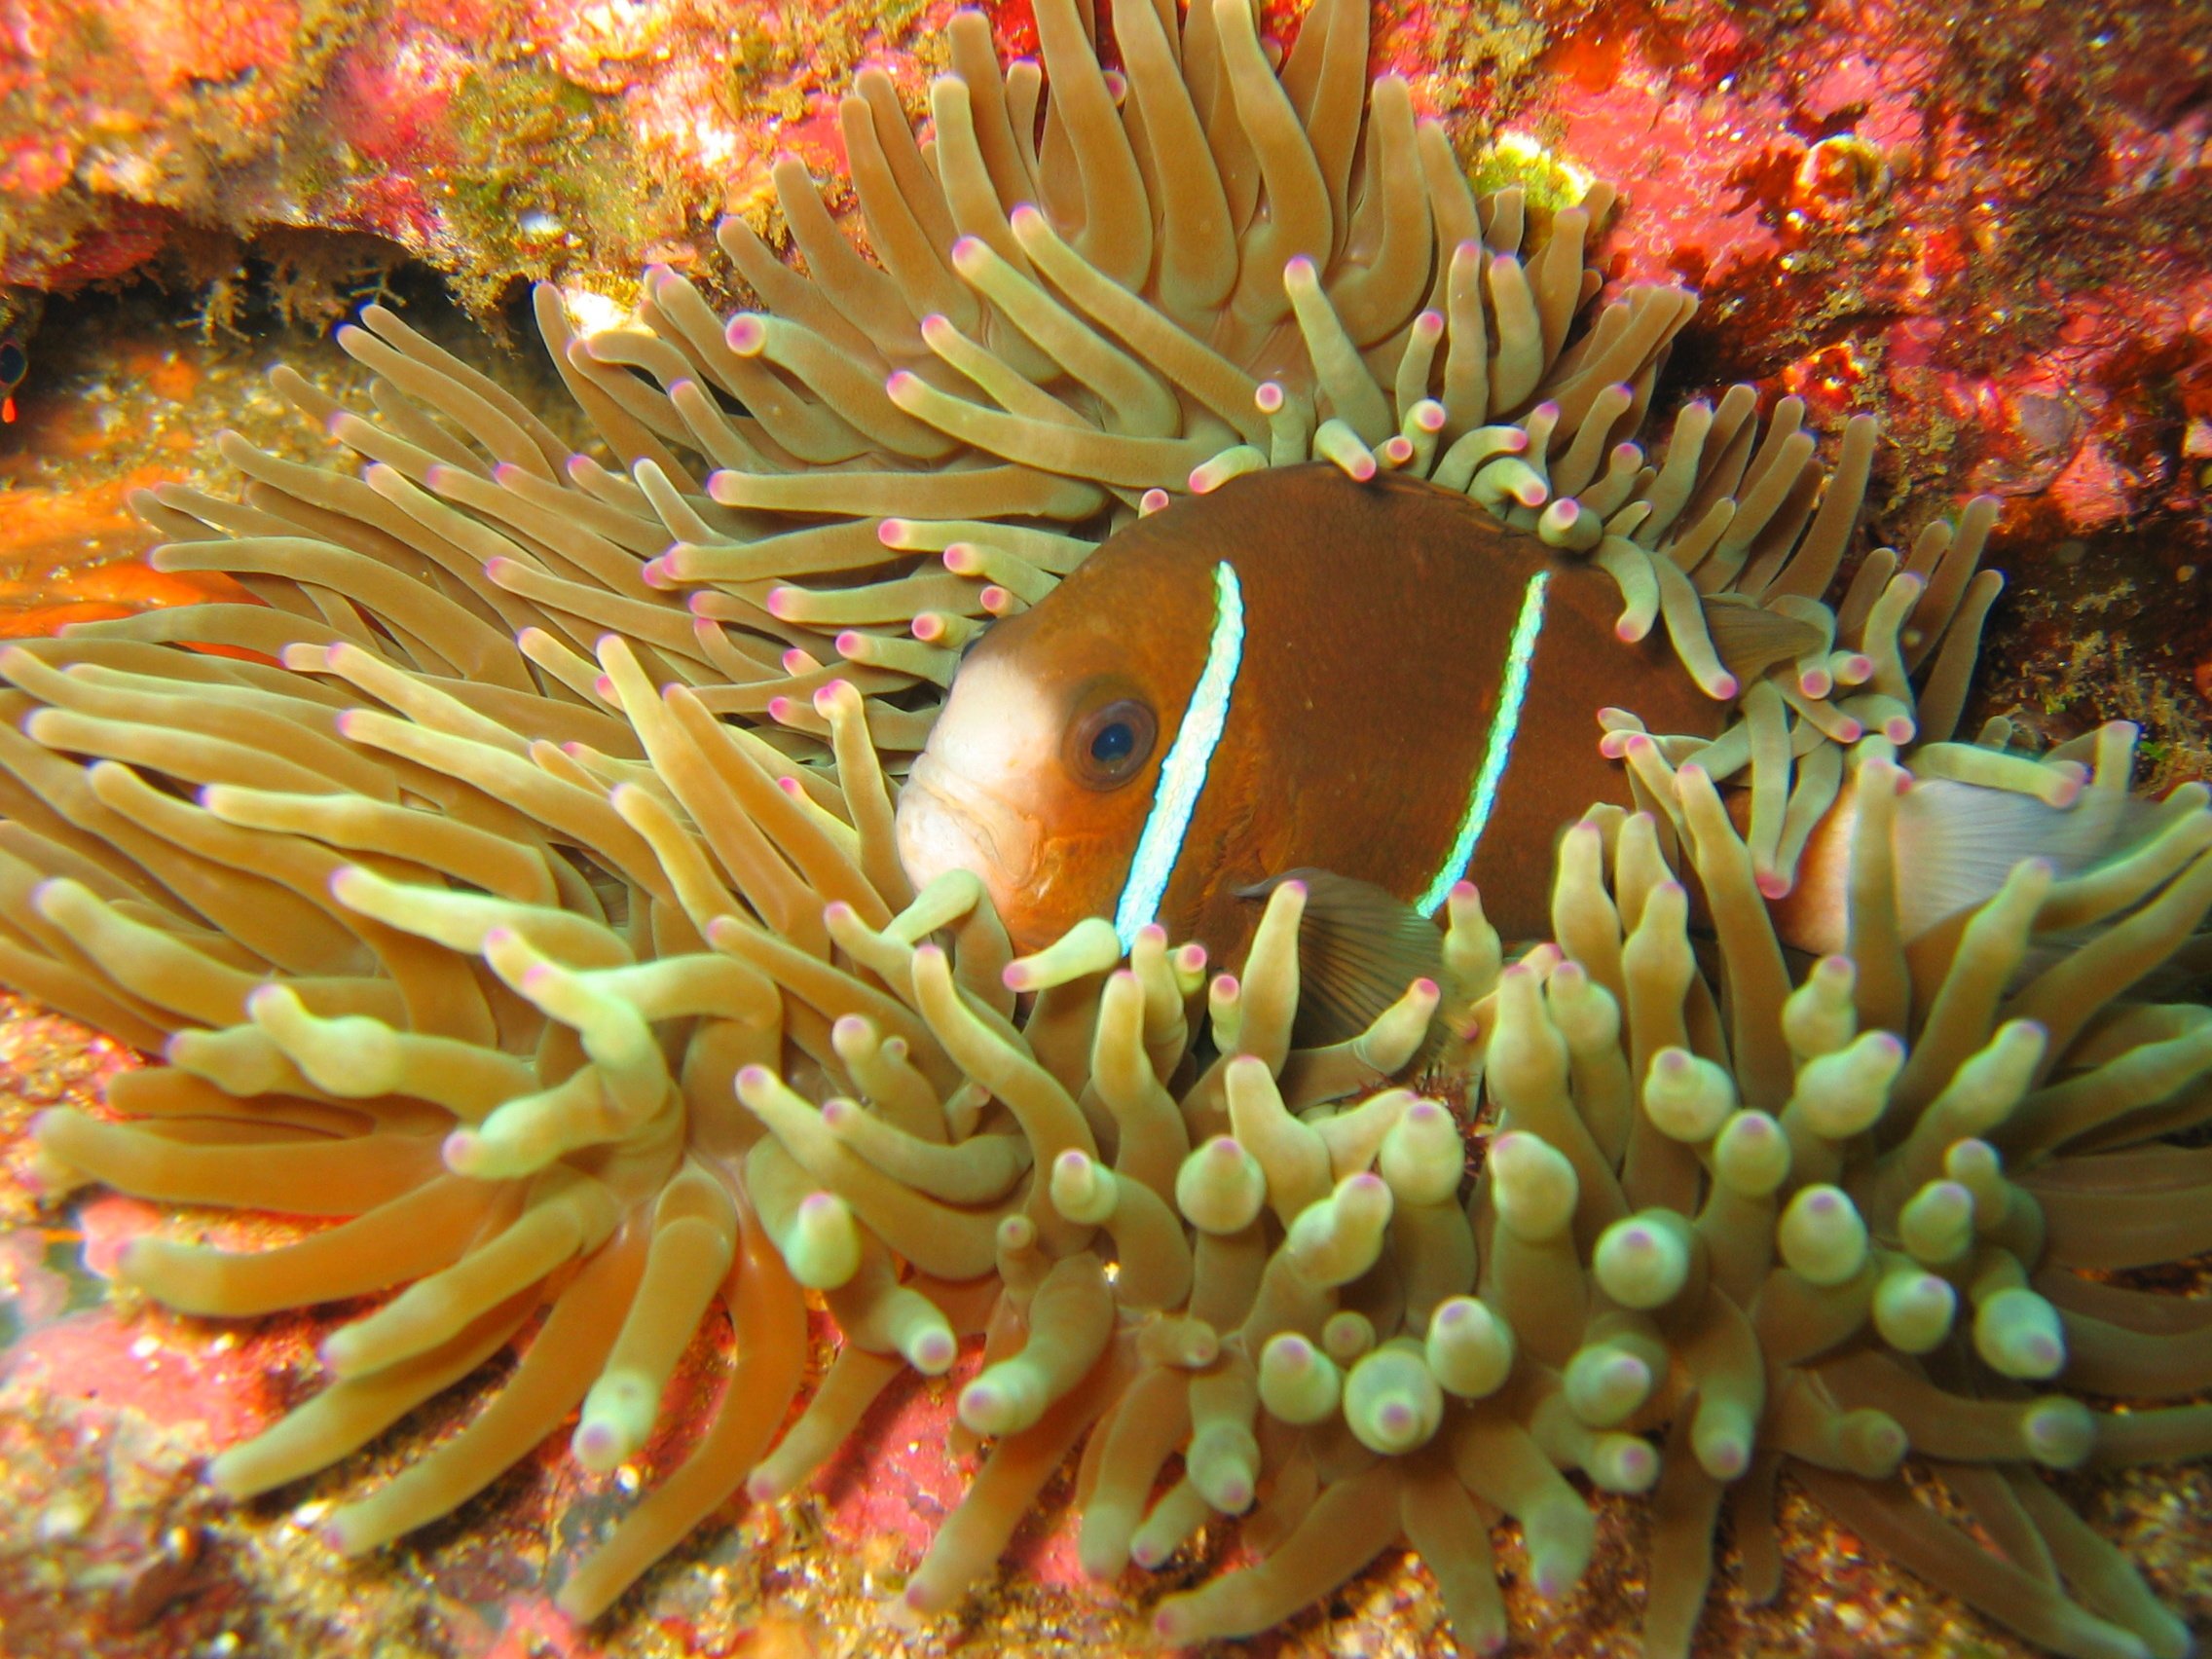 underwater anemone with clownfish named nemo